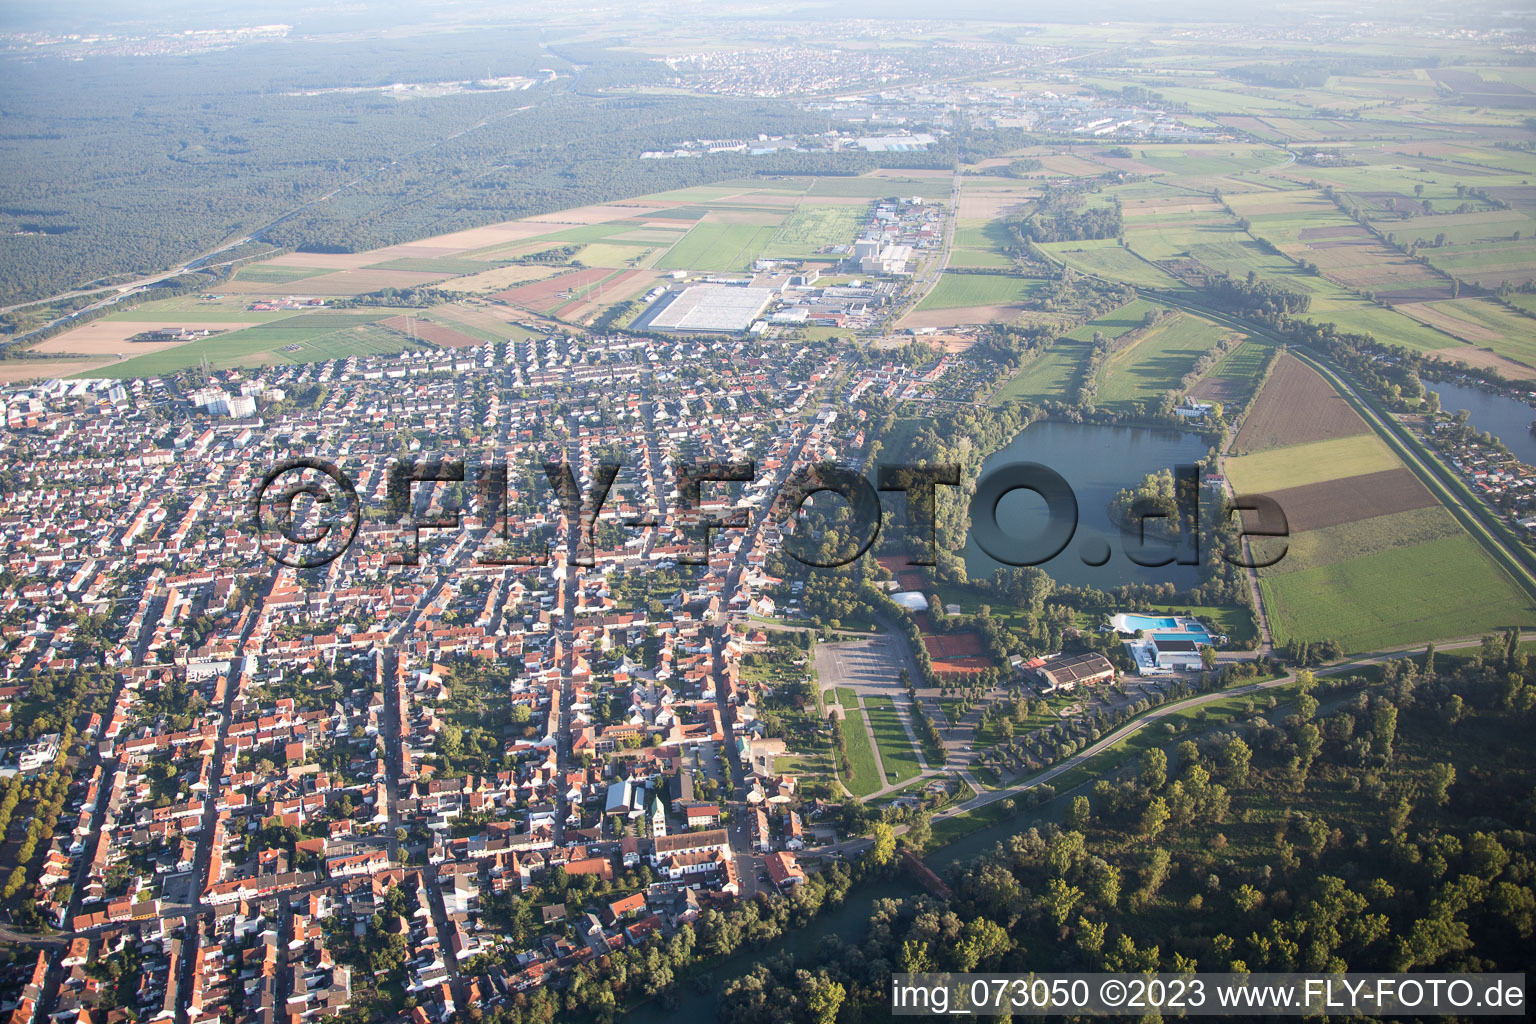 Ketsch im Bundesland Baden-Württemberg, Deutschland aus der Luft betrachtet